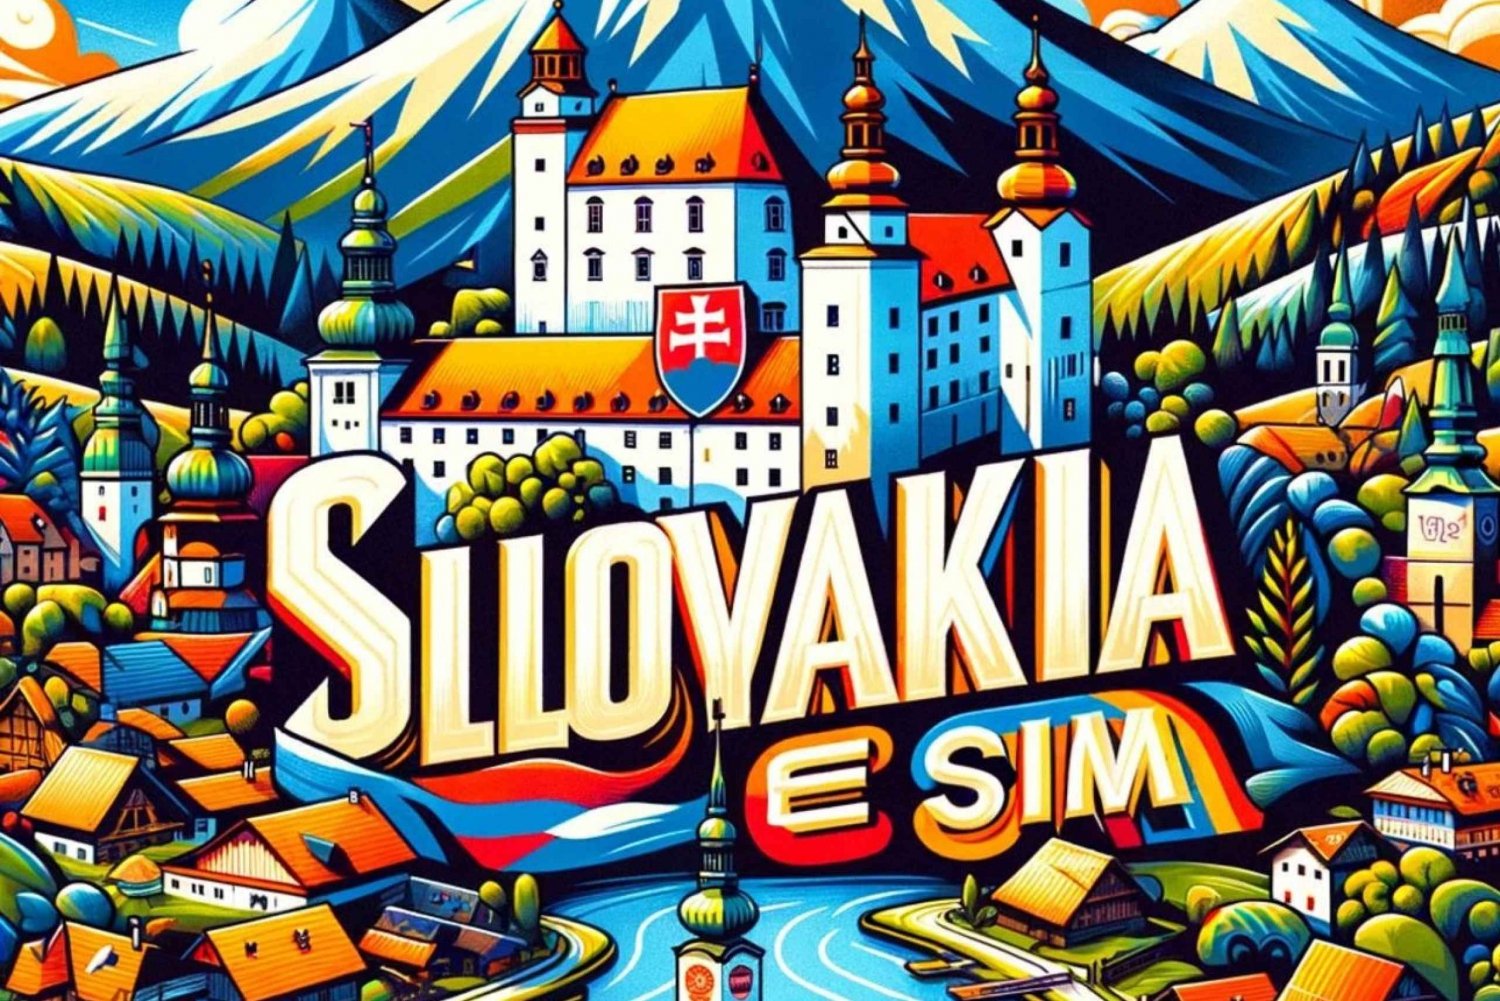 eSIM Slowakei Unbegrenzte Daten